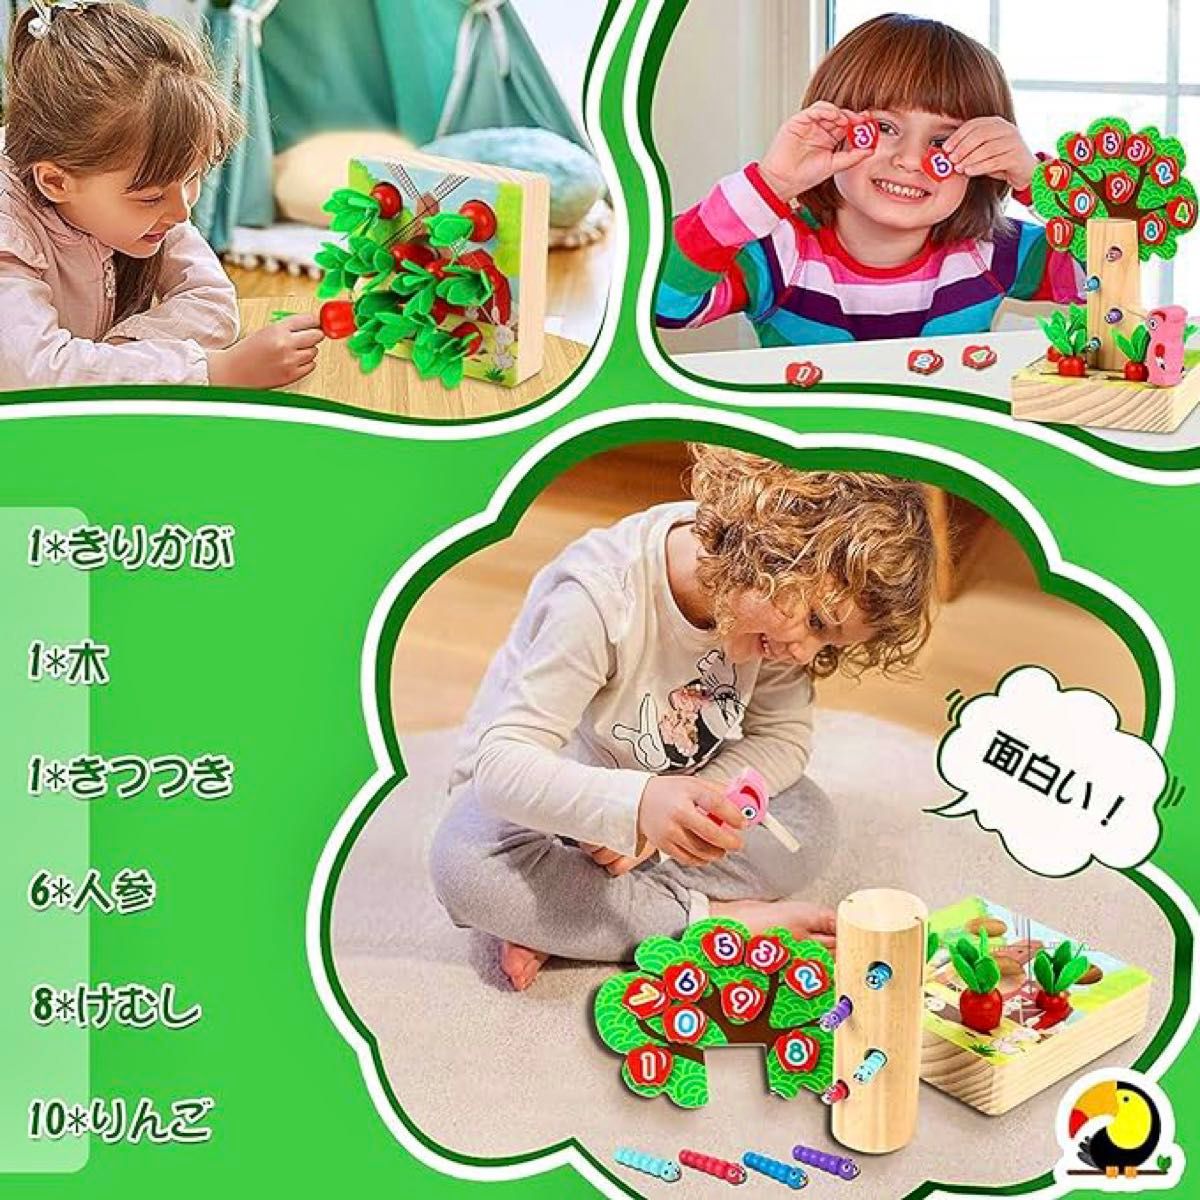 【新品未使用】モンテッソーリ 知育玩具 木製 3in1 子供 おもちゃ 磁気 積み木 空間認識 形状認識 色感覚